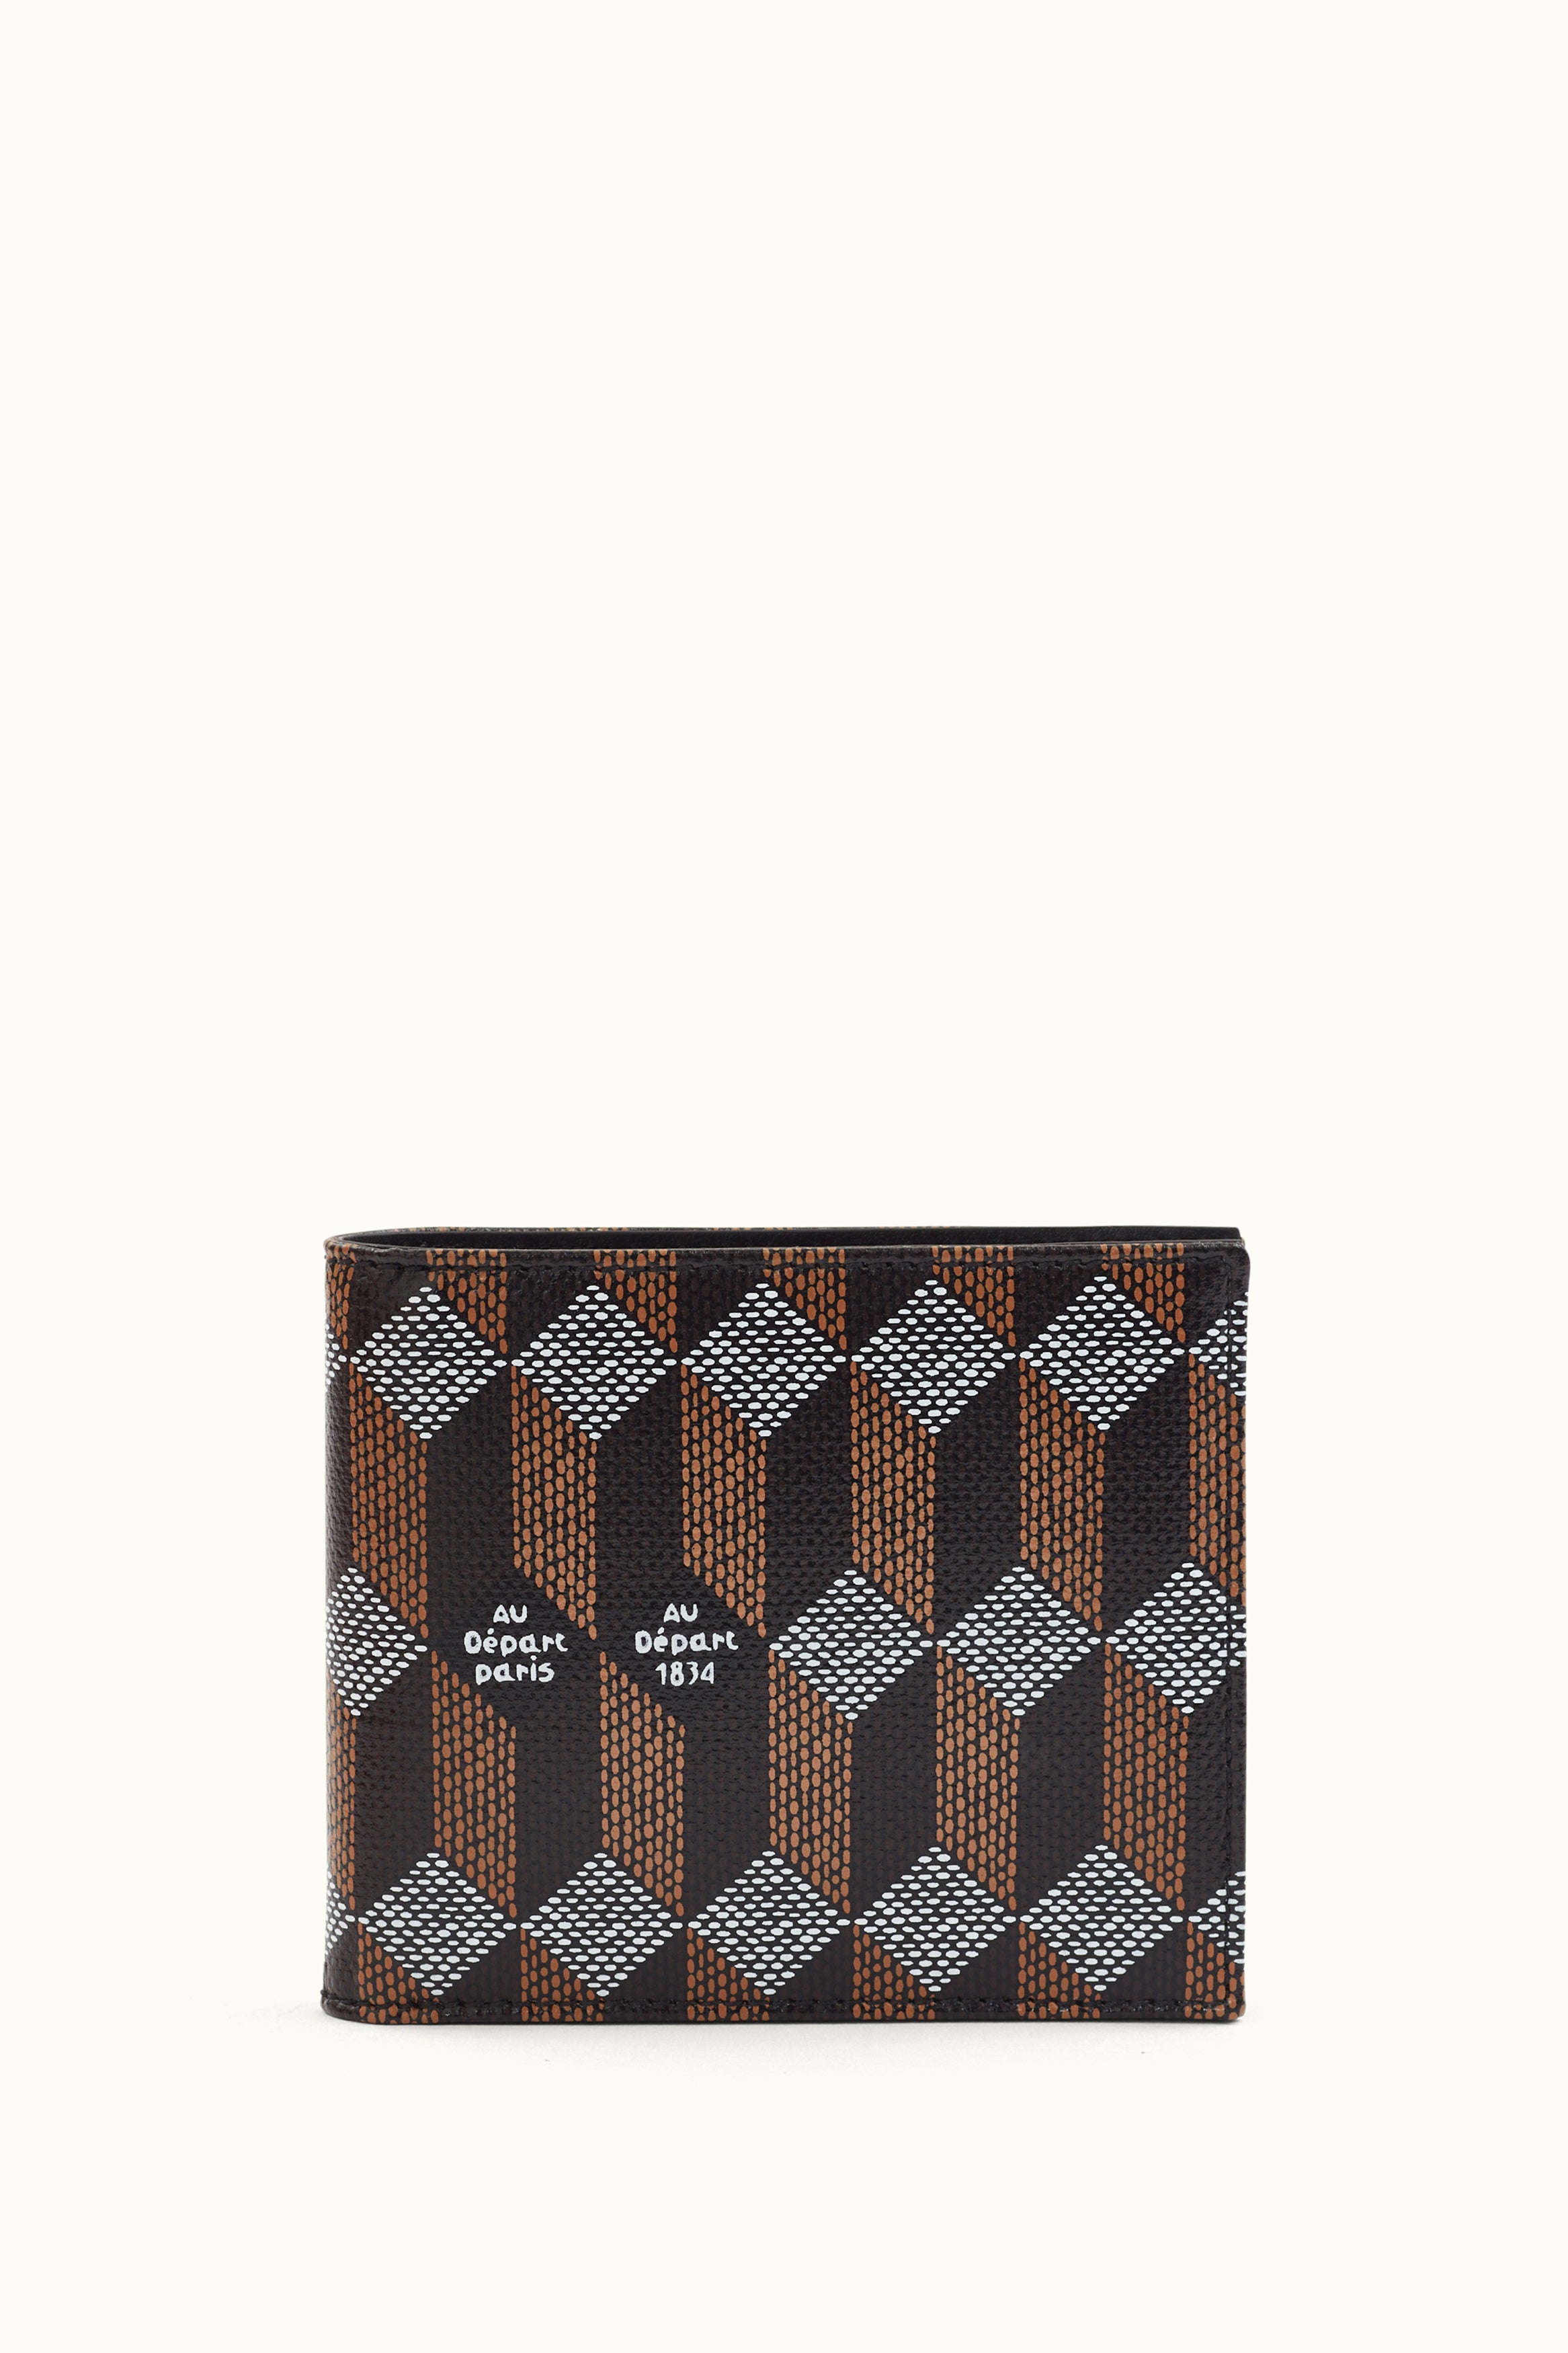 Louis Vuitton Damier Graphite Pattern Coated Canvas Wallet - Black